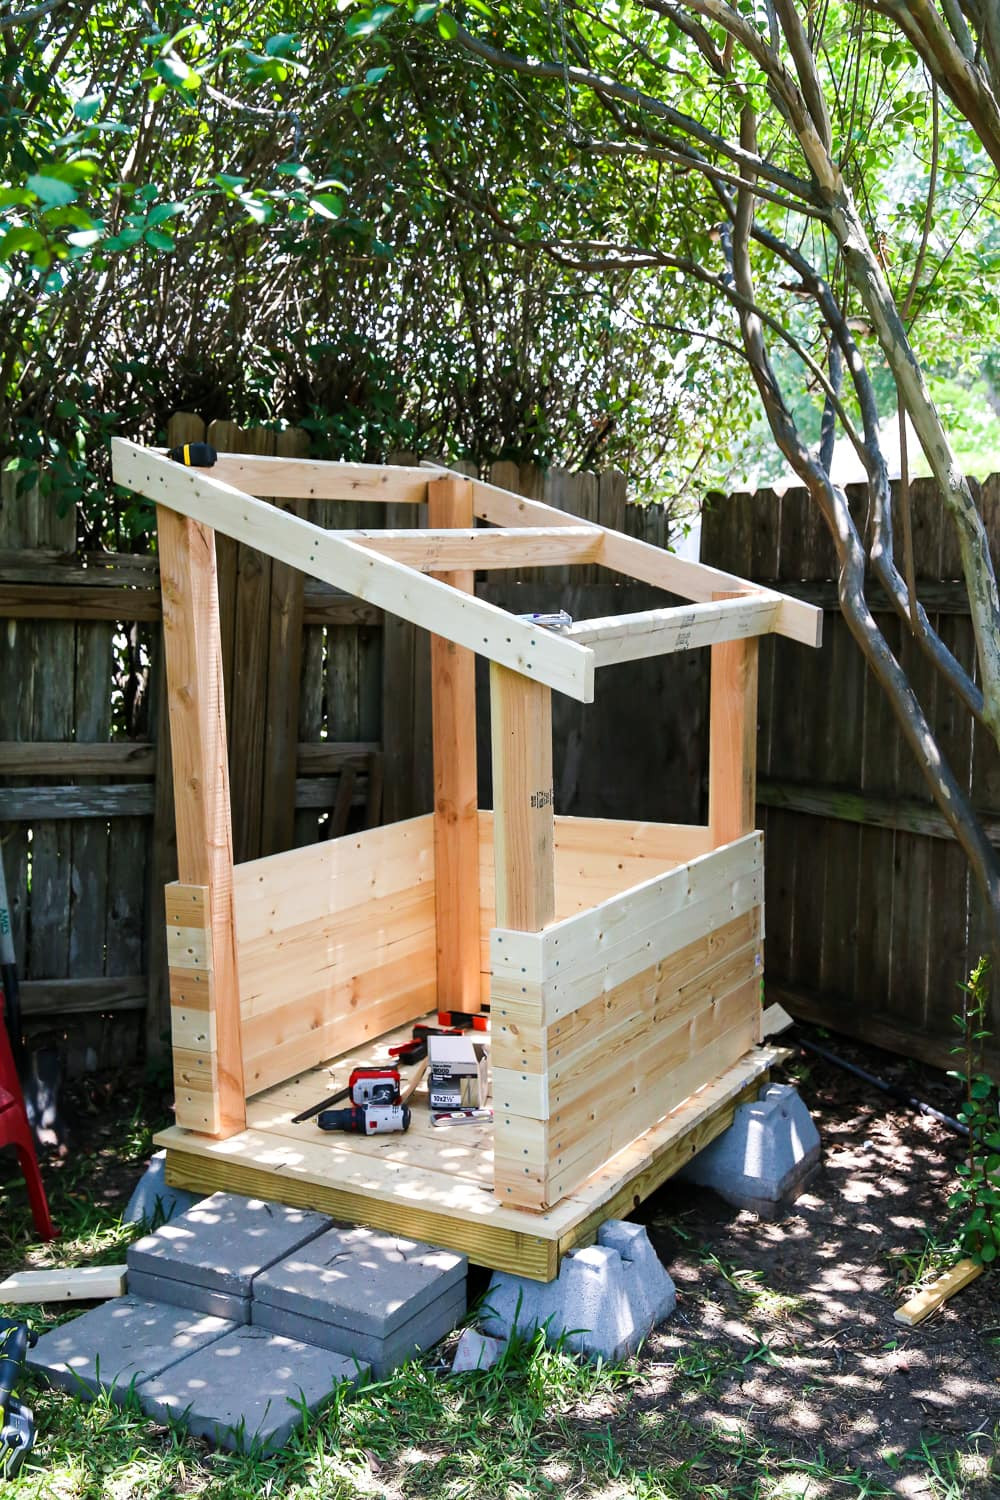 DIY Kids Outdoor Playhouse
 DIY Playhouse How to Build a Backyard Playhouse for Your